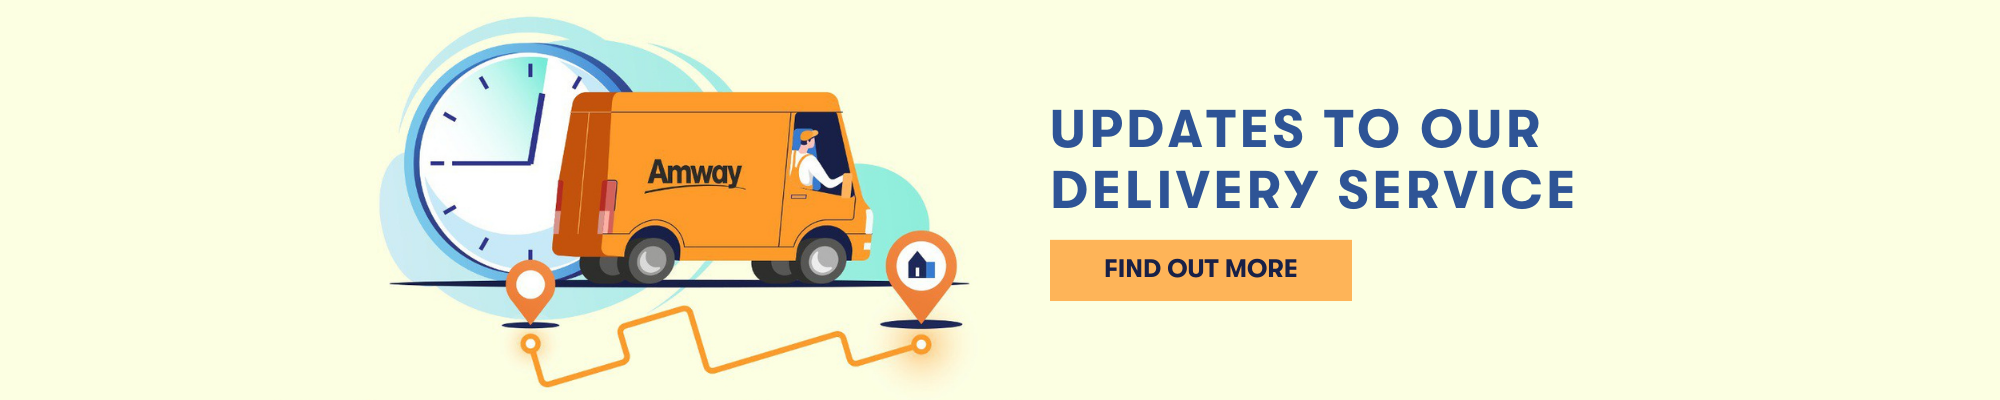 Delivery Service Updates - en.png